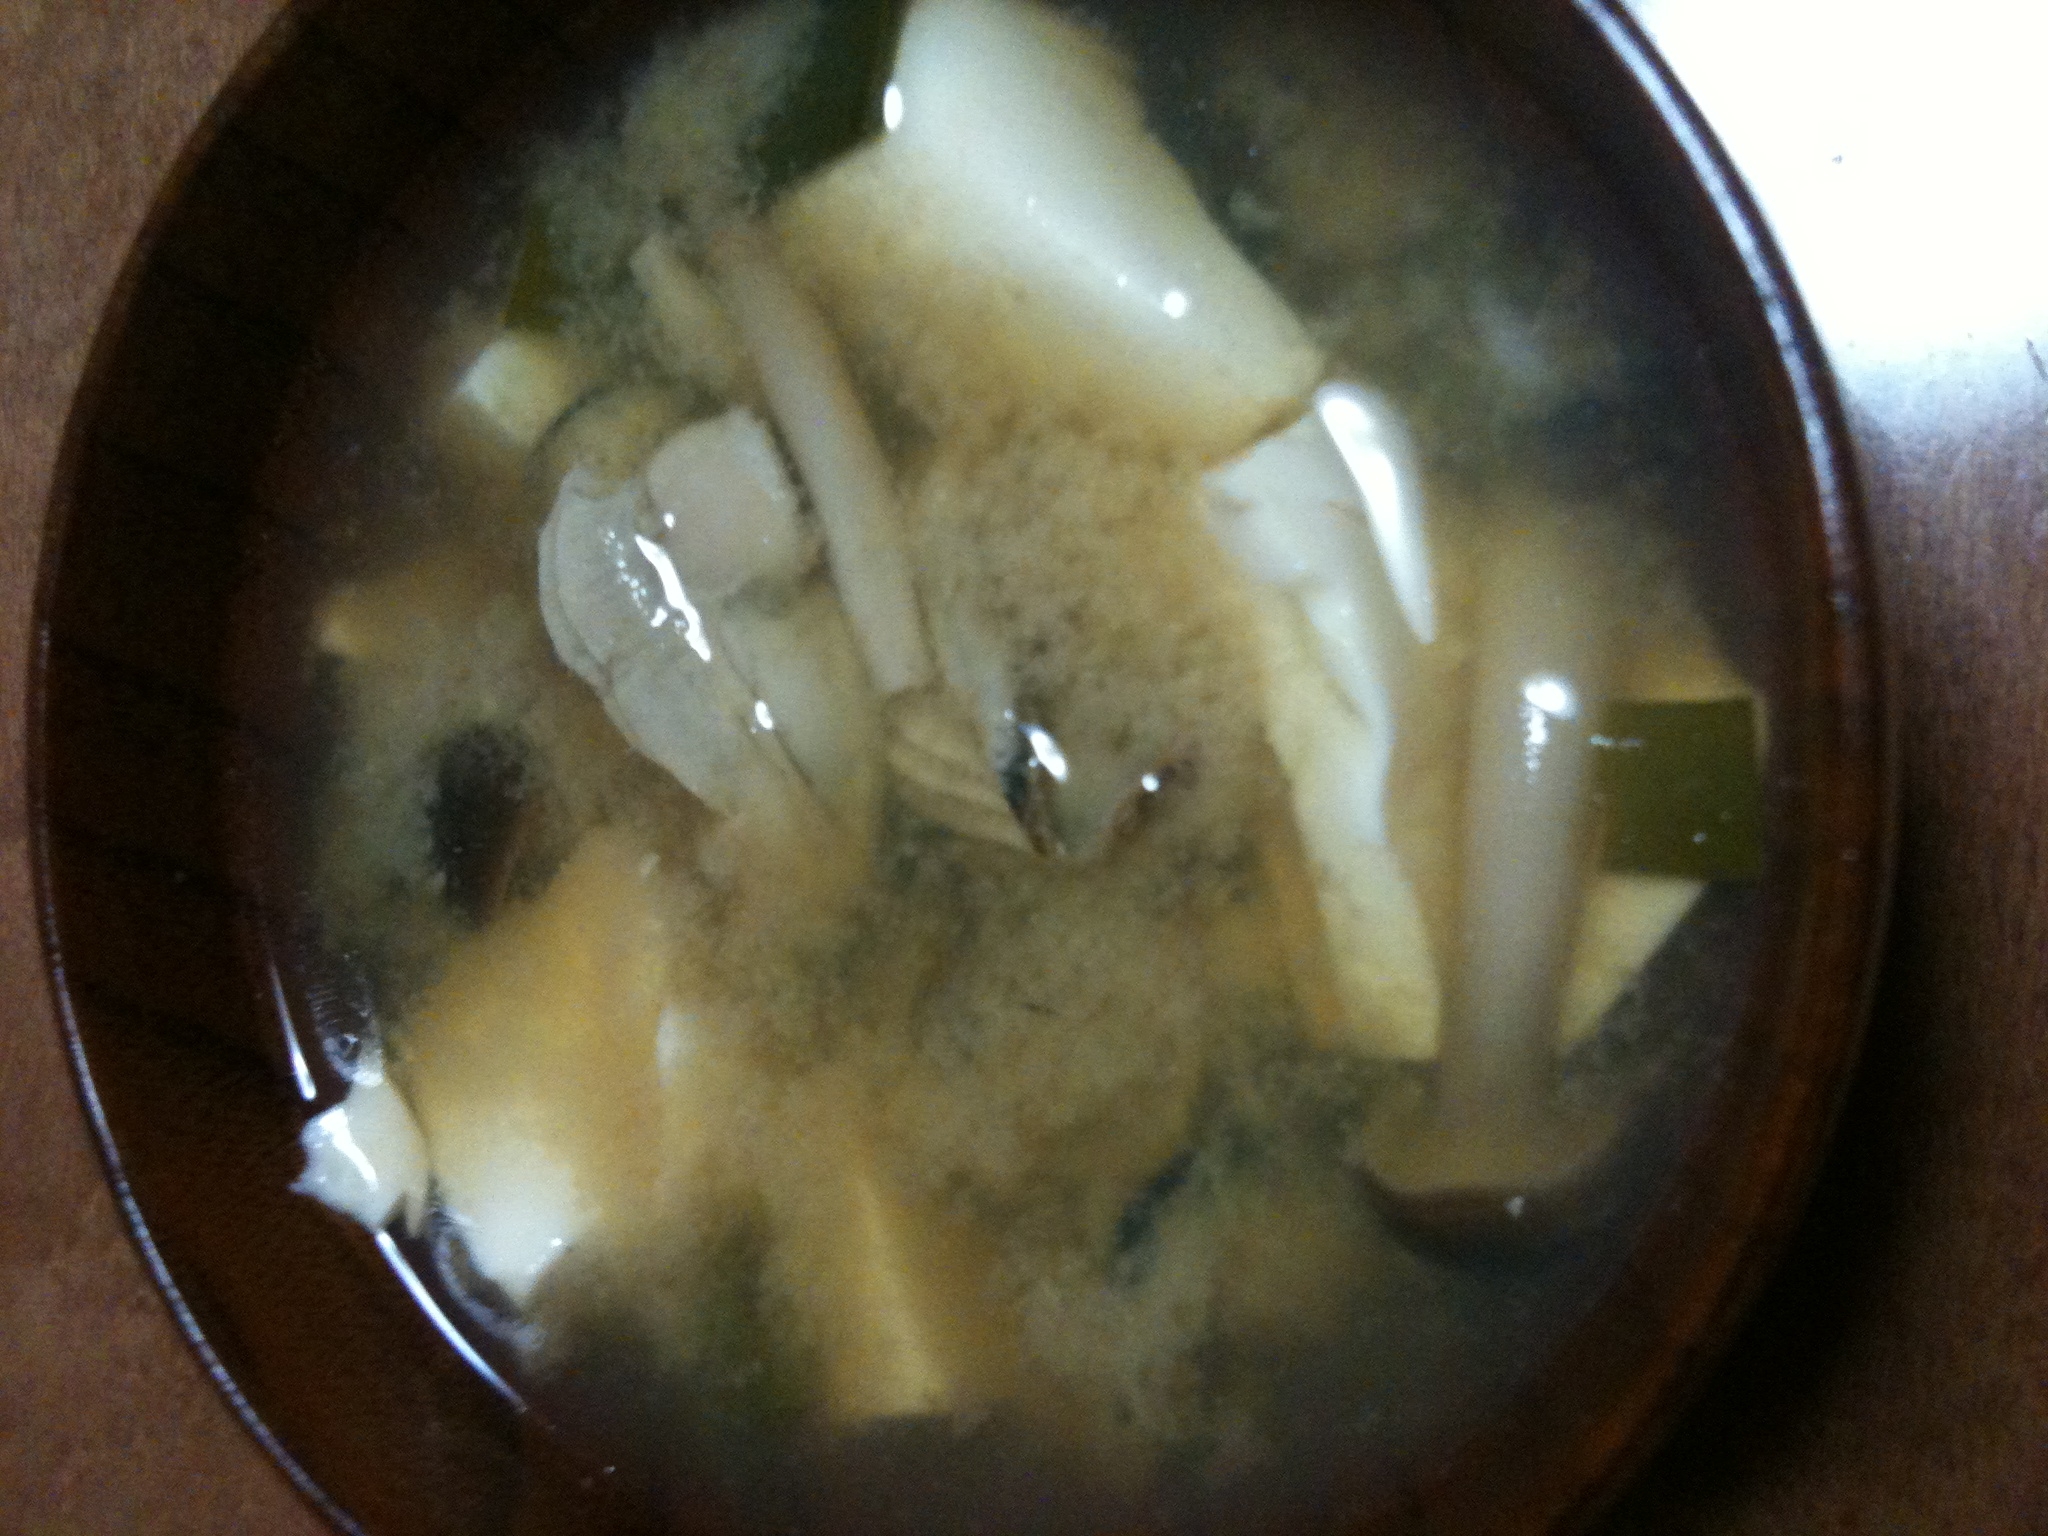 牡蠣と豆腐の味噌汁